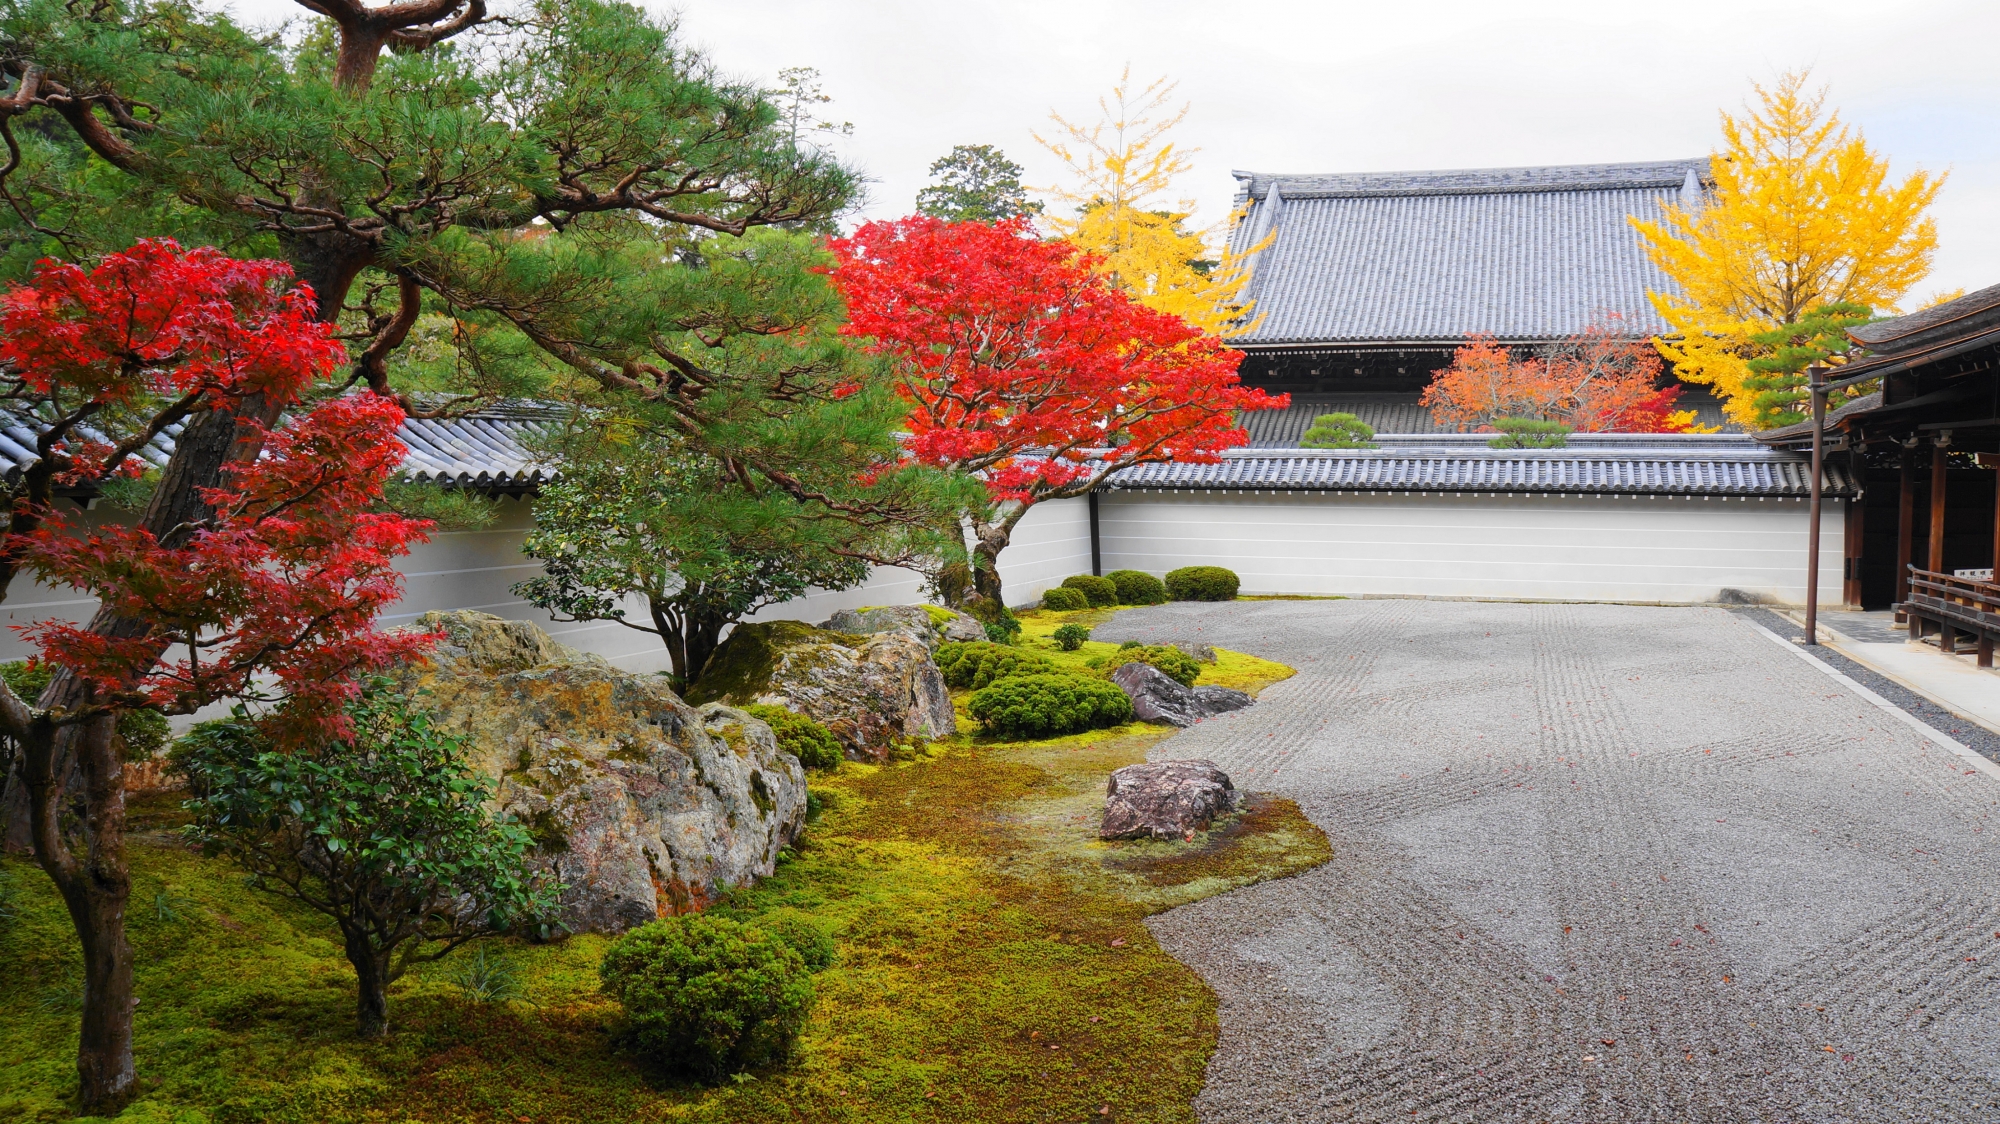 艶やかに染まった上品な秋の南禅寺方丈庭園